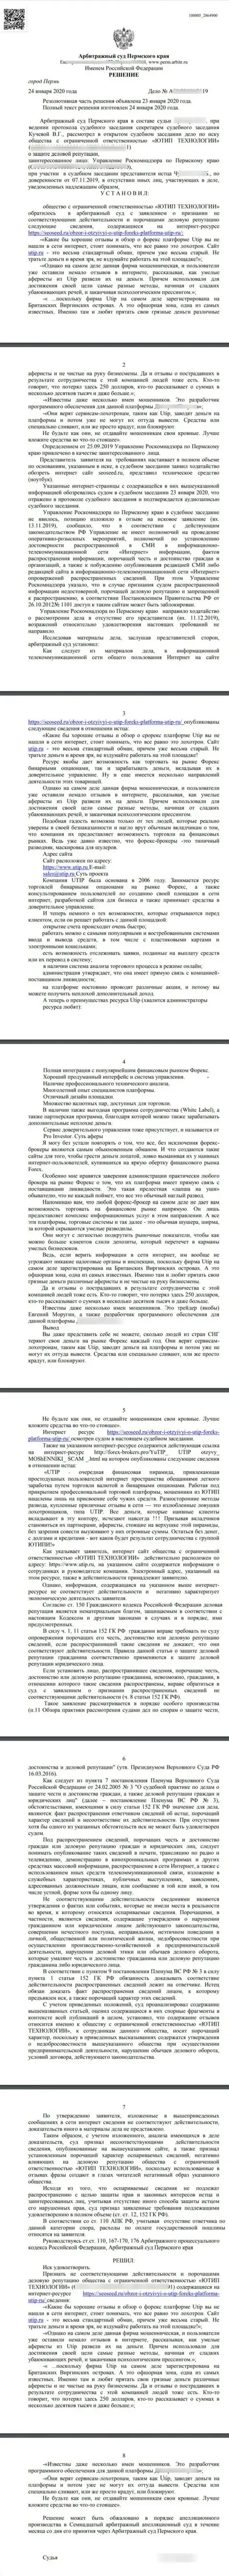 Судебный иск мошенников UTIP Ru в адрес информационного сервиса SeoSeed Ru, который удовлетворён самым справедливым судом